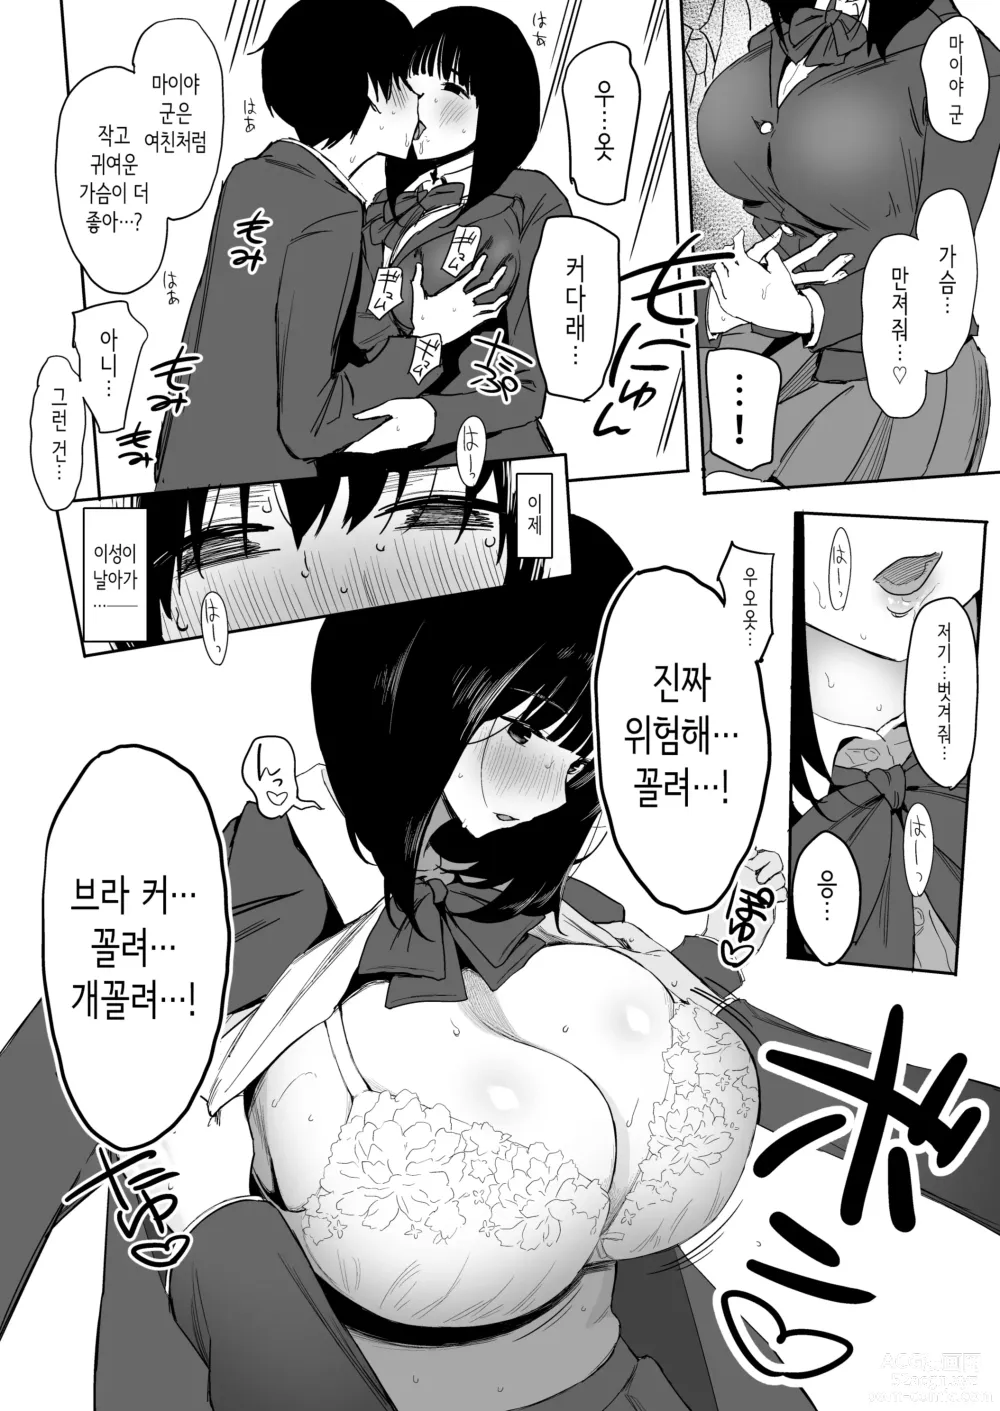 Page 28 of doujinshi 나, 아직 좋아해.